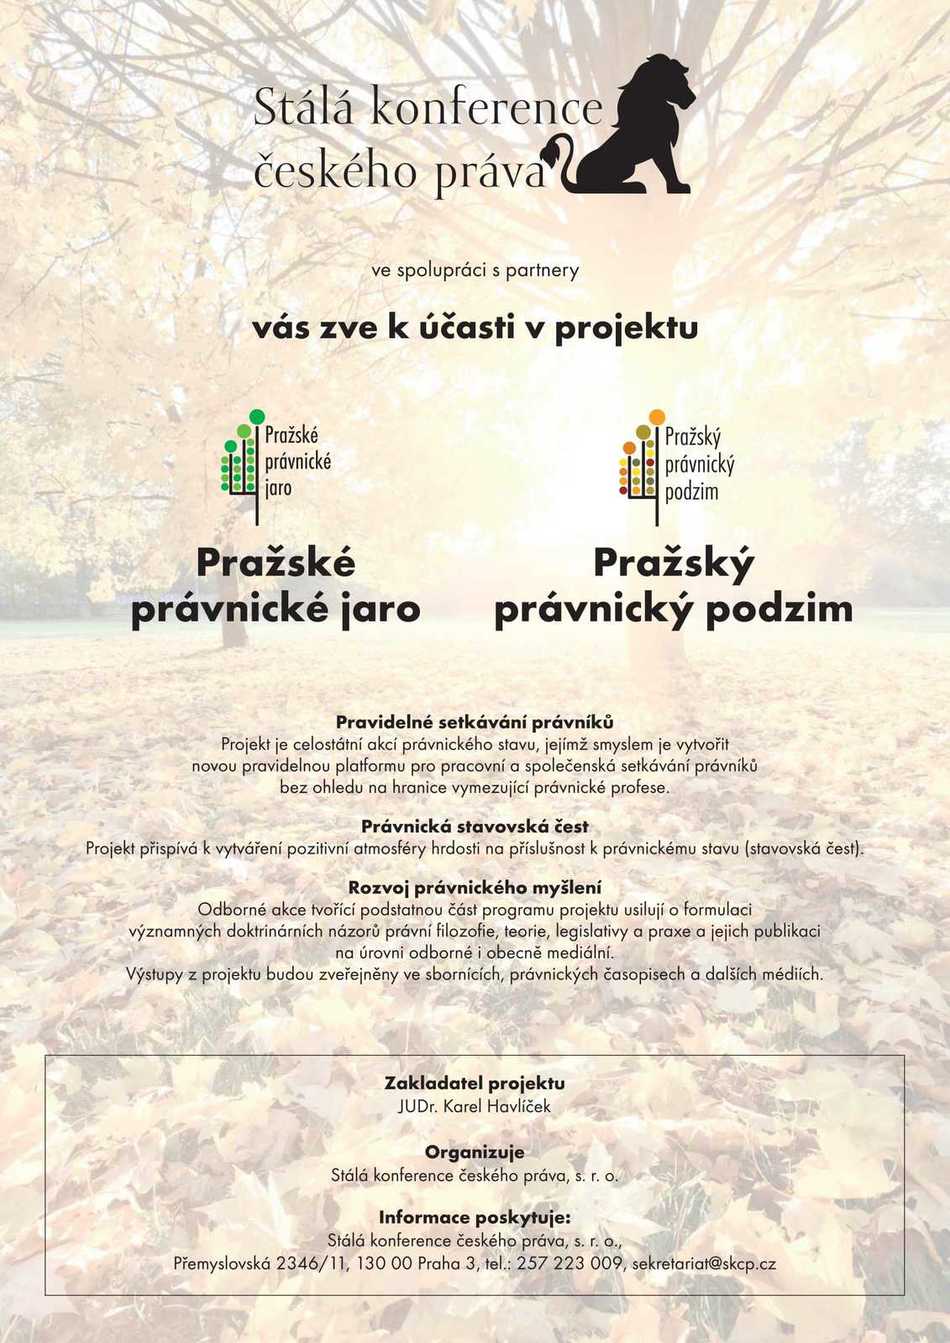 Stálá konference českého práva zve k účasti v projektu Pražské právnické jaro a Pražský právnický podzim